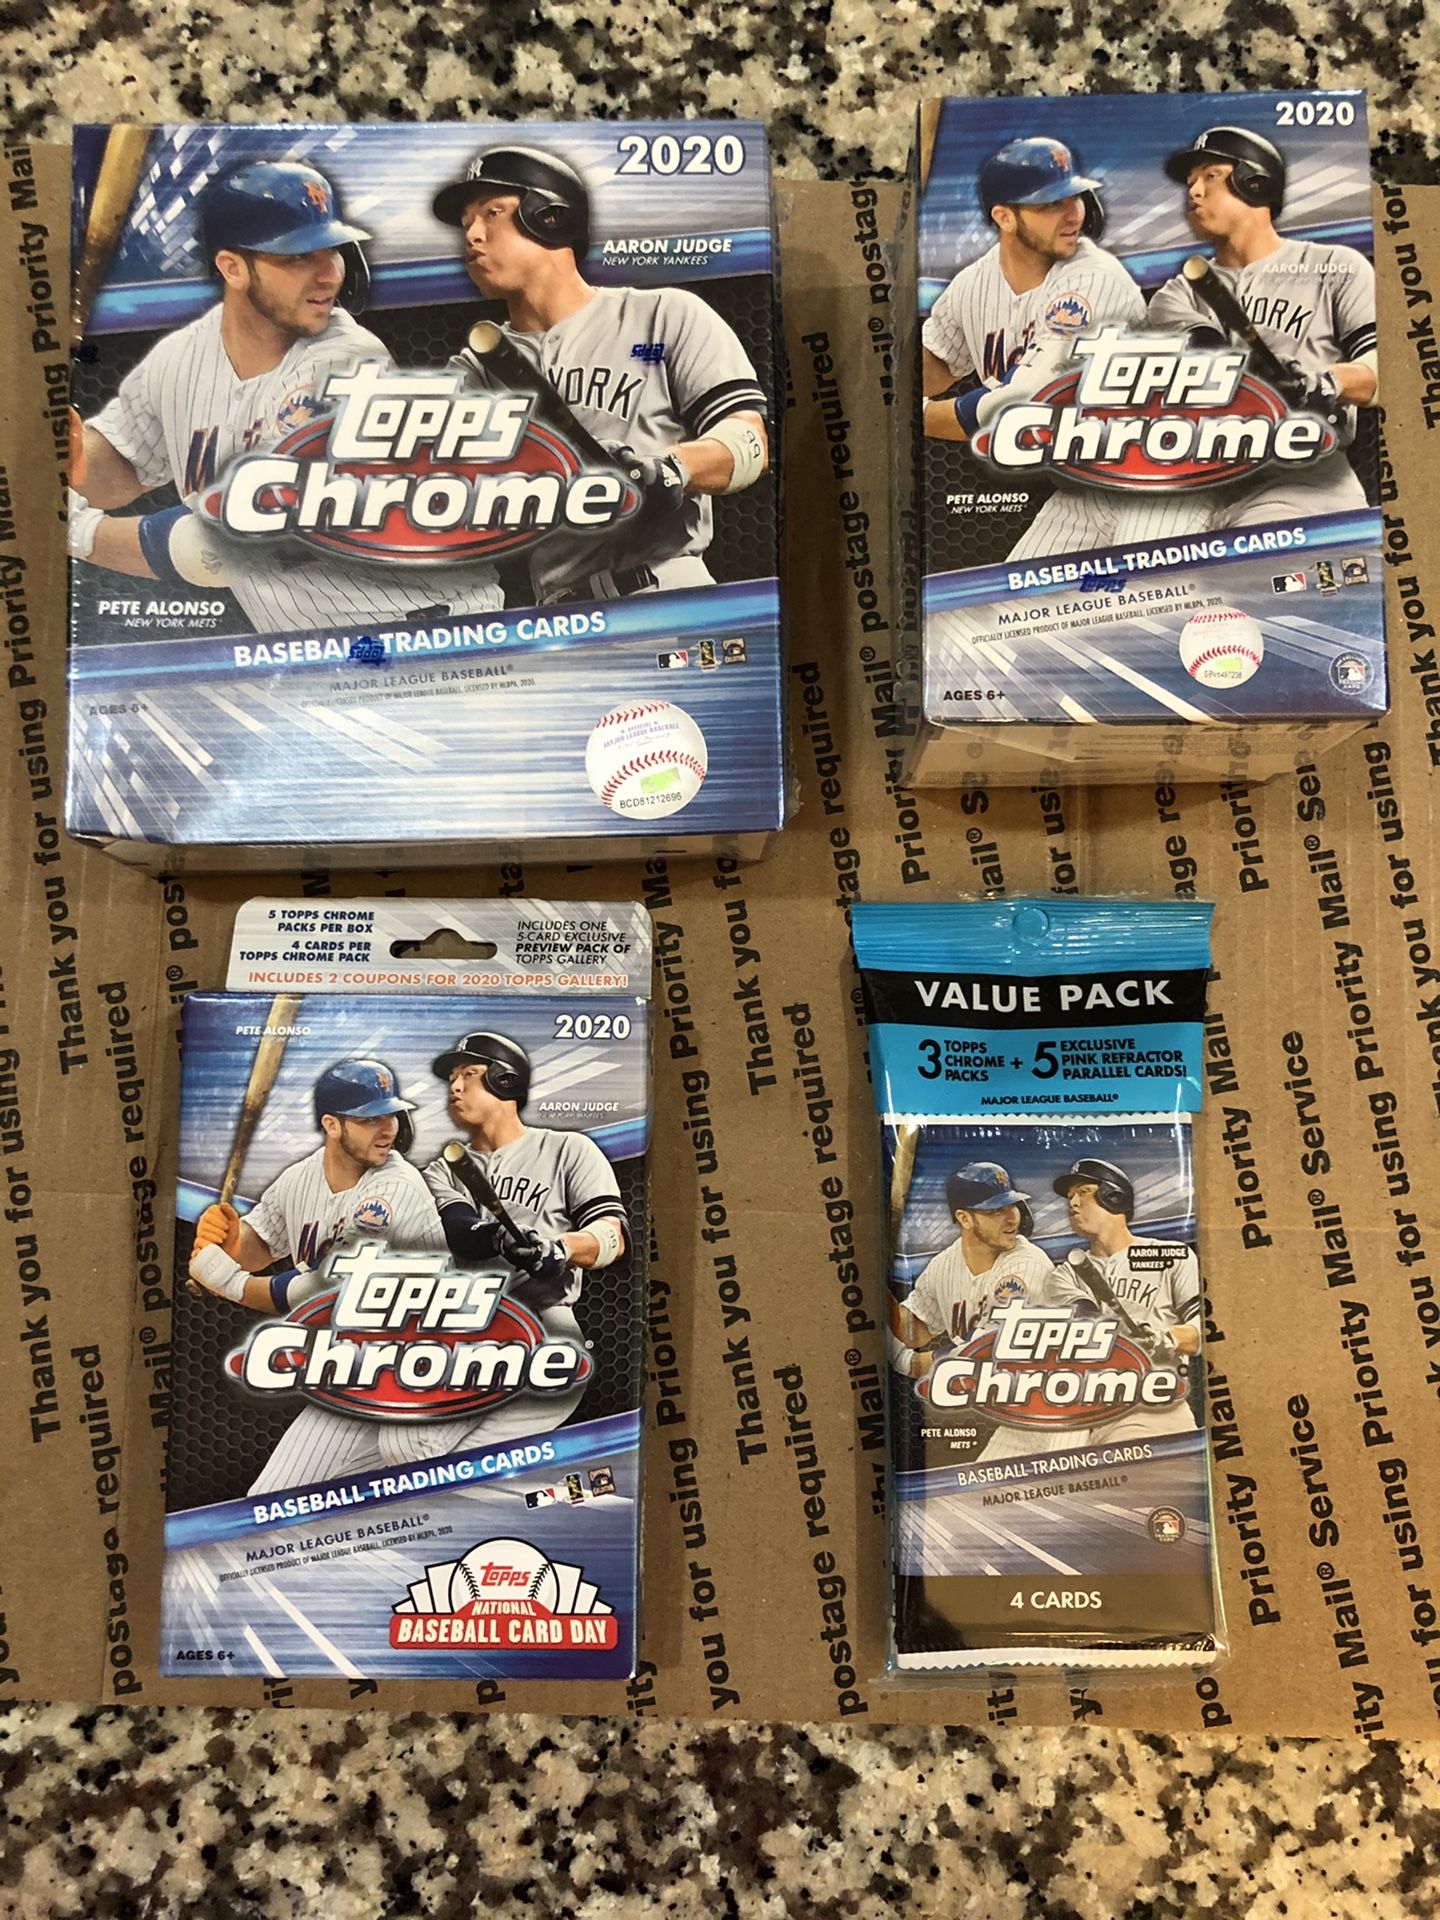 Topps 2020 chrome baseball cards